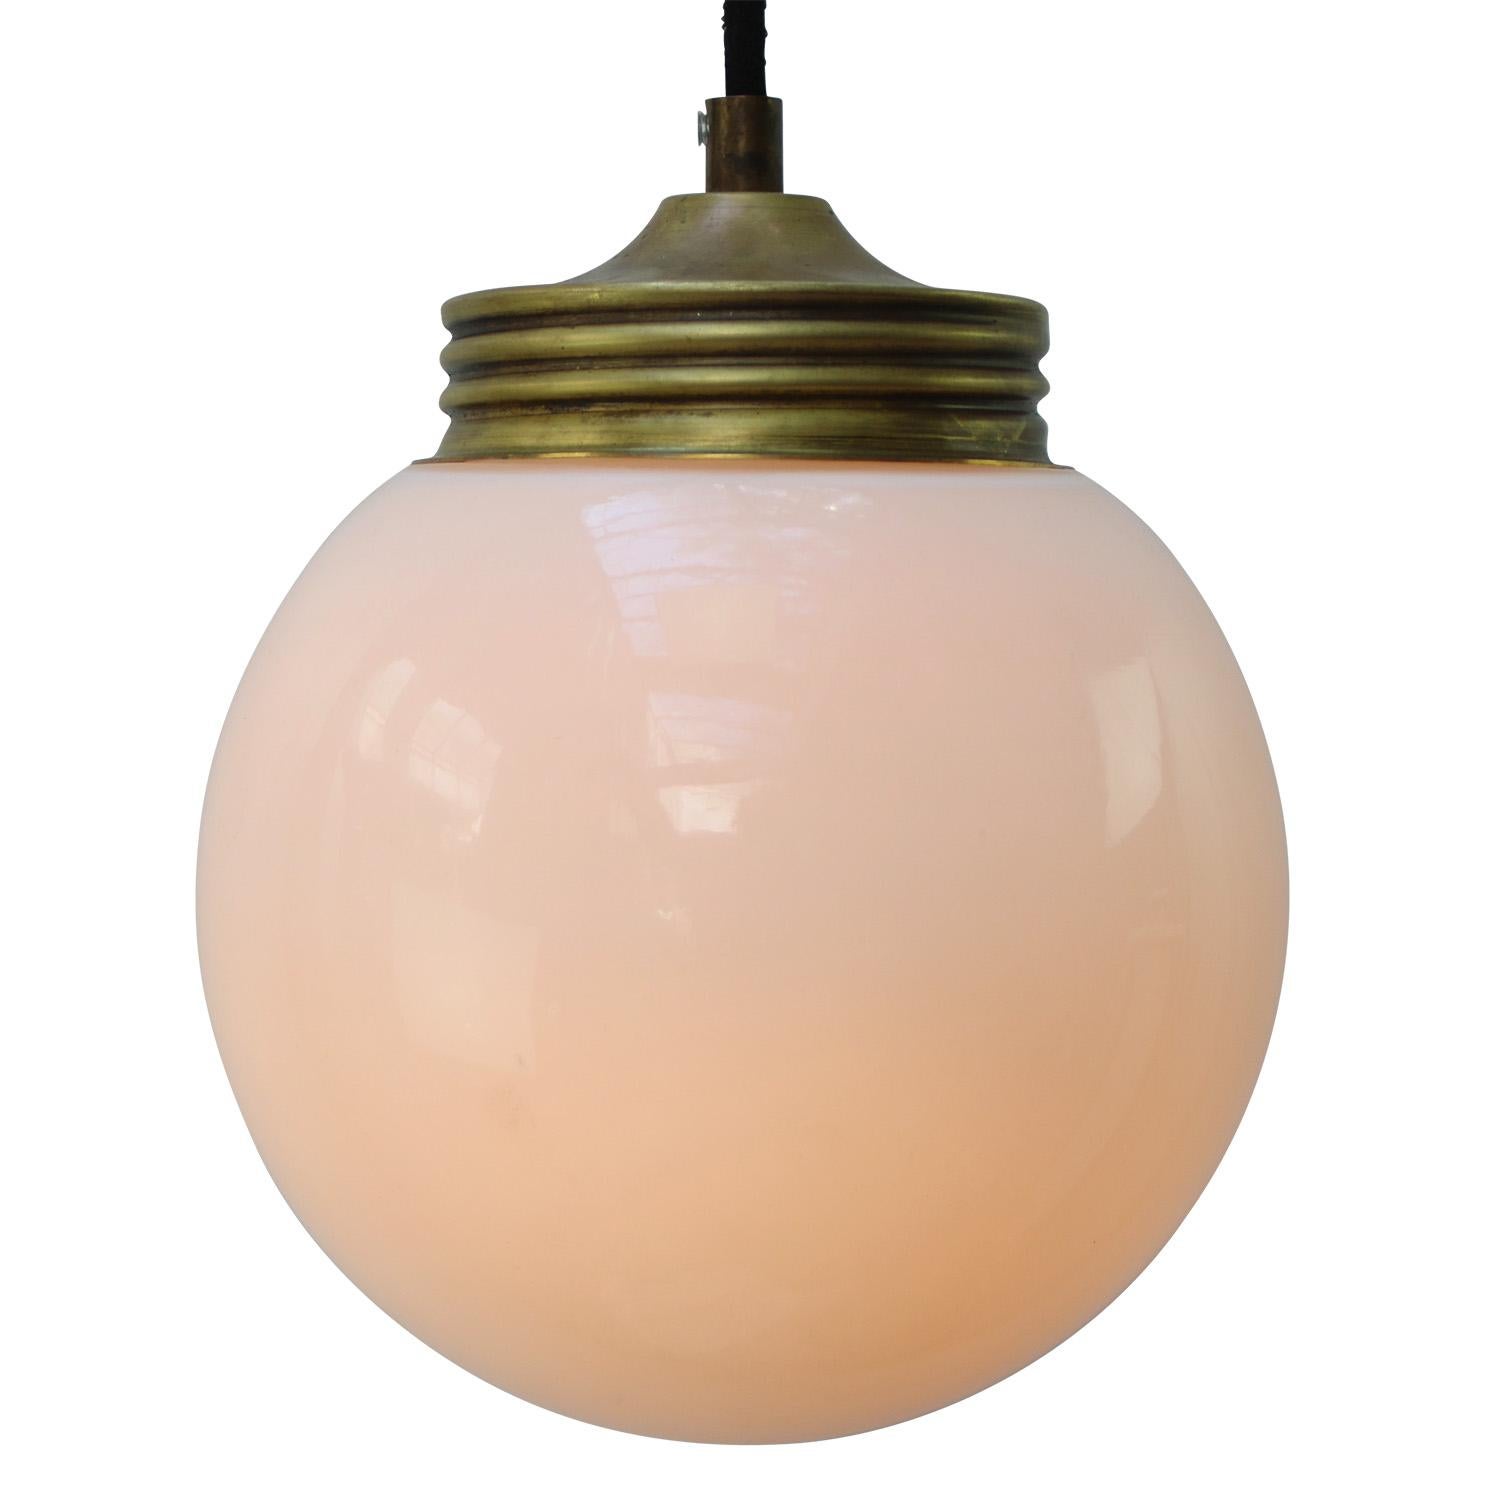 Weiße industrielle Hängelampe.
Messing und Opalglas.

Gewicht: 1,20 kg / 2,6 lb

Der Preis gilt für jeden einzelnen Artikel. Alle Lampen sind nach internationalen Normen für Glühbirnen, energieeffiziente und LED-Lampen geeignet.